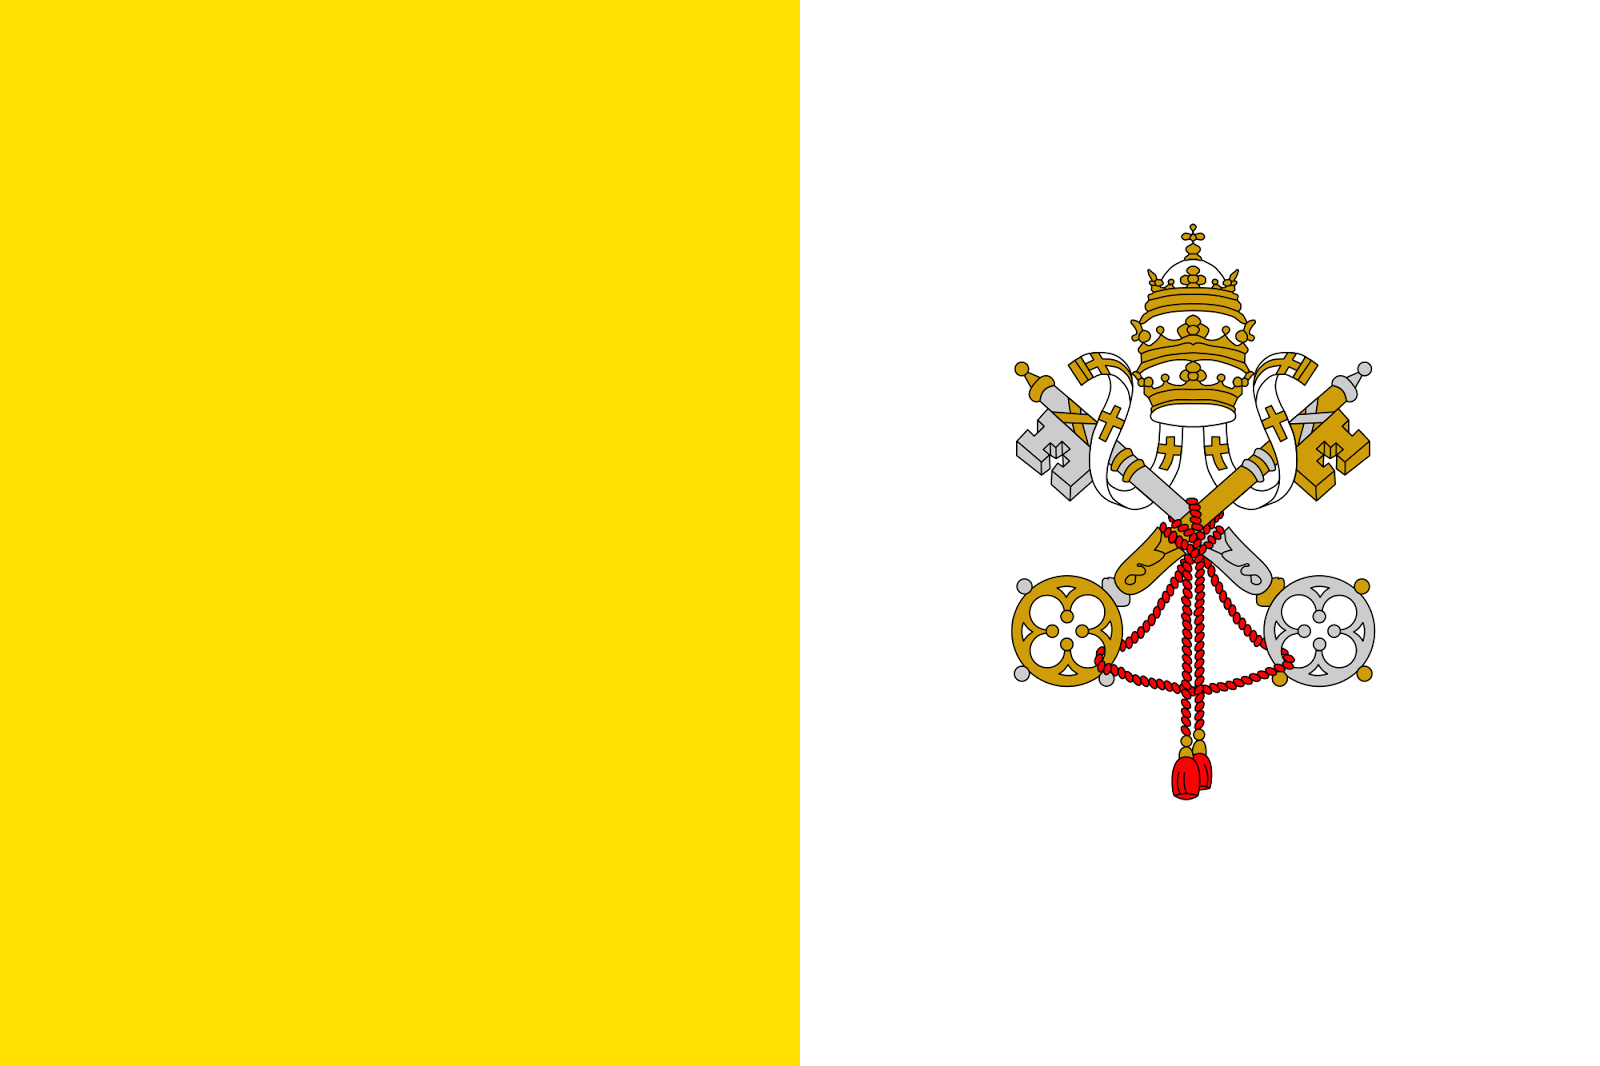 https://4.bp.blogspot.com/-faX2wOmiBzI/VvAD2cENWDI/AAAAAAAASLk/4InFhlgkoO0iodcDTmdLI33oX8INaIlyw/s1600/Flag_of_the_Vatican_City_2_by_3.svg.png